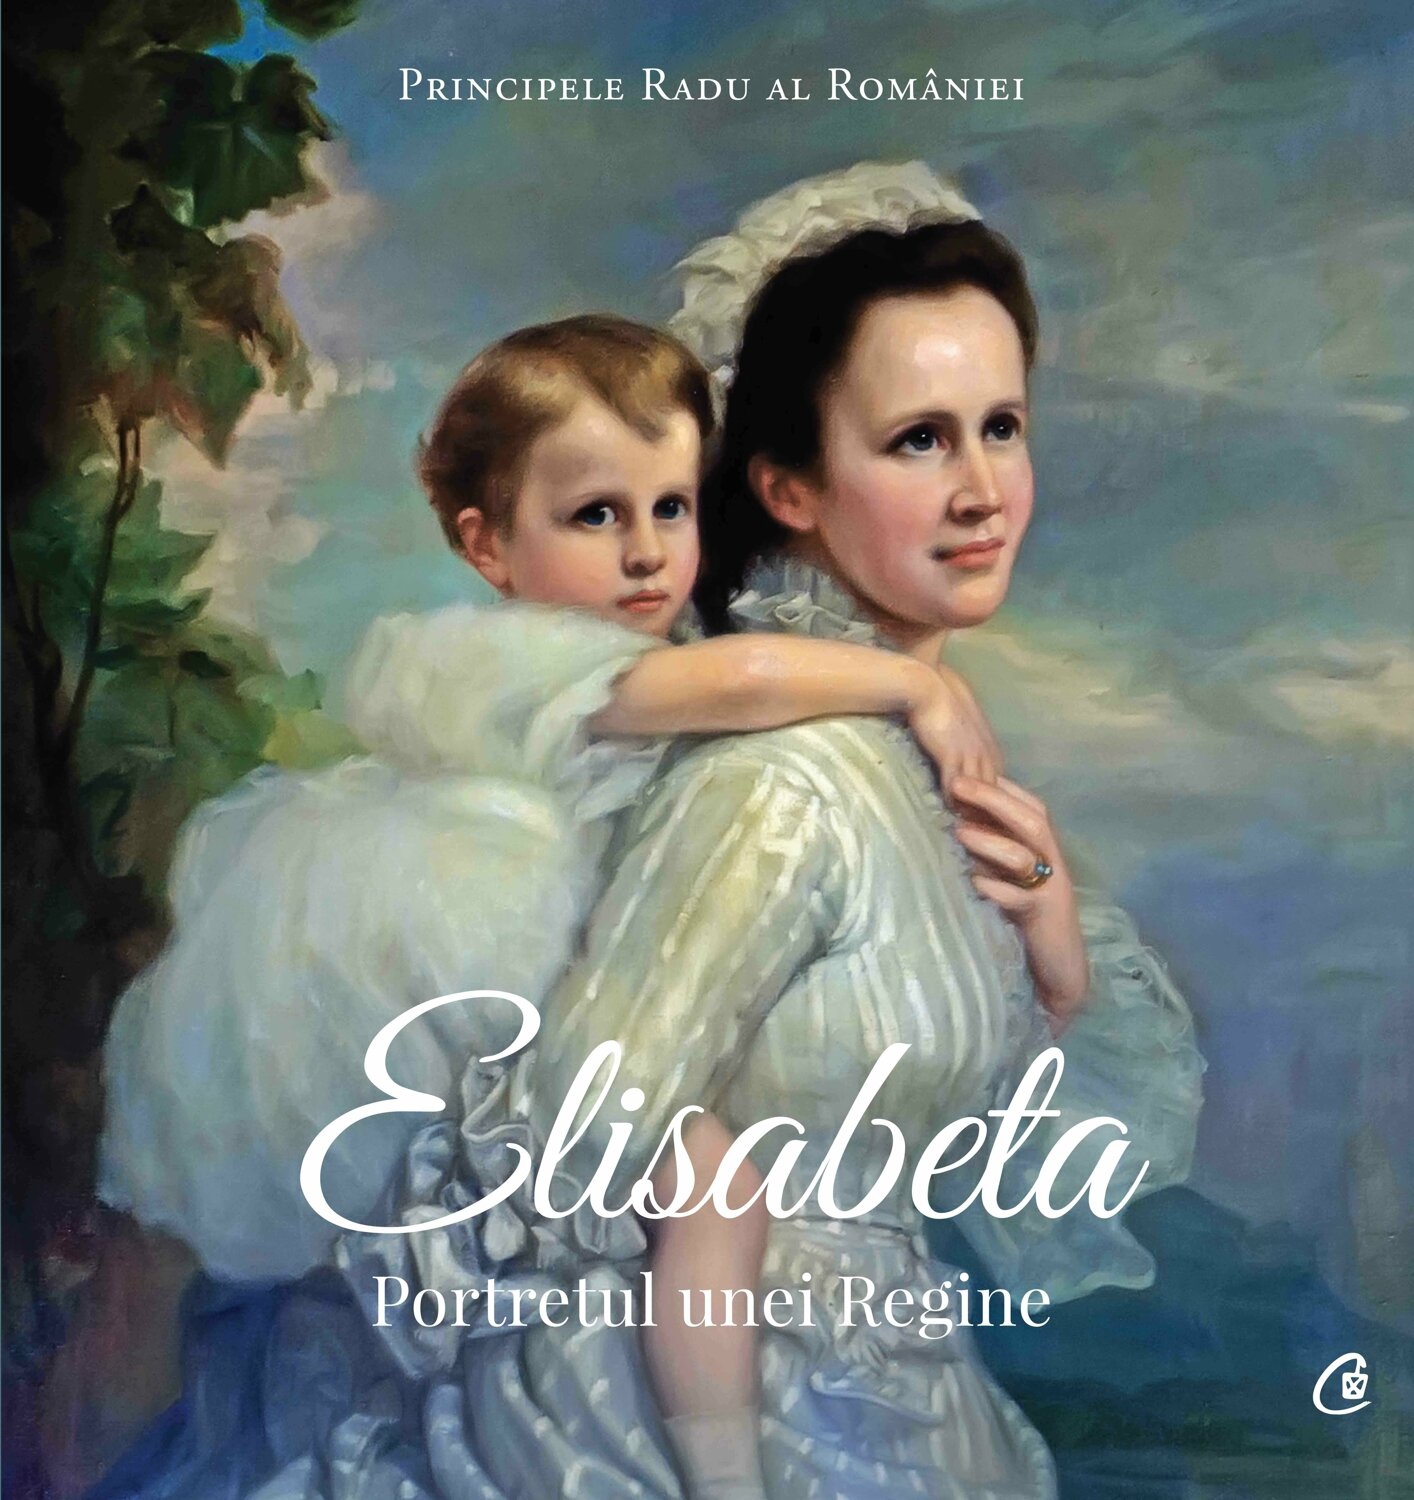 Elisabeta. Portretul unei Regine | Principele Radu Al Romaniei carturesti.ro